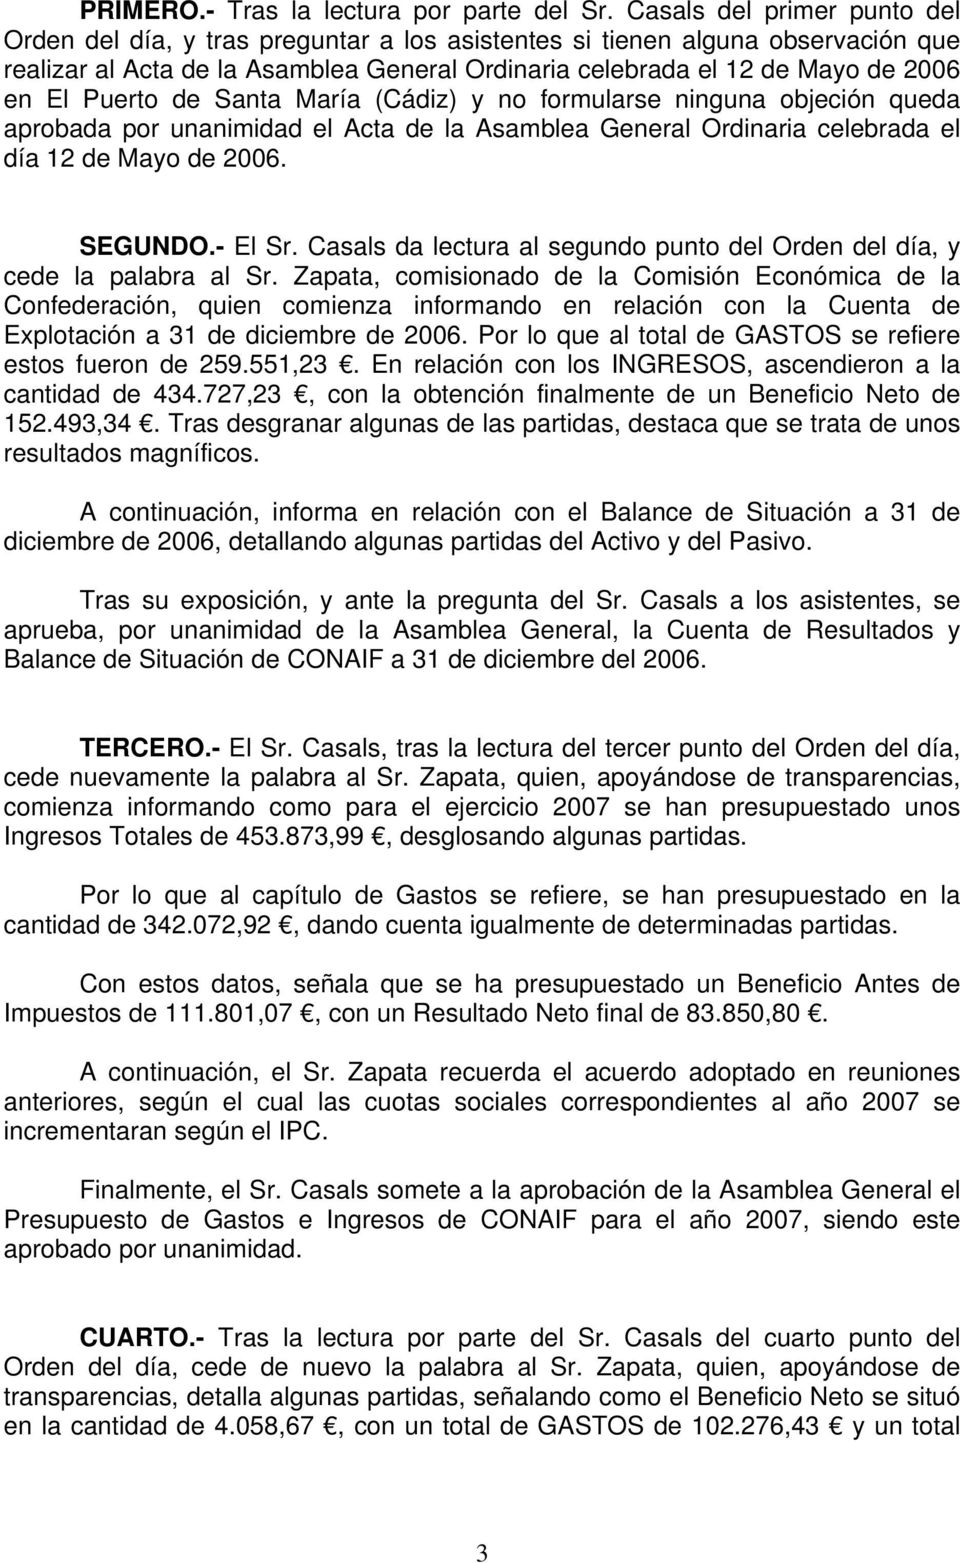 Puerto de Santa María (Cádiz) y no formularse ninguna objeción queda aprobada por unanimidad el Acta de la Asamblea General Ordinaria celebrada el día 12 de Mayo de 2006. SEGUNDO.- El Sr.